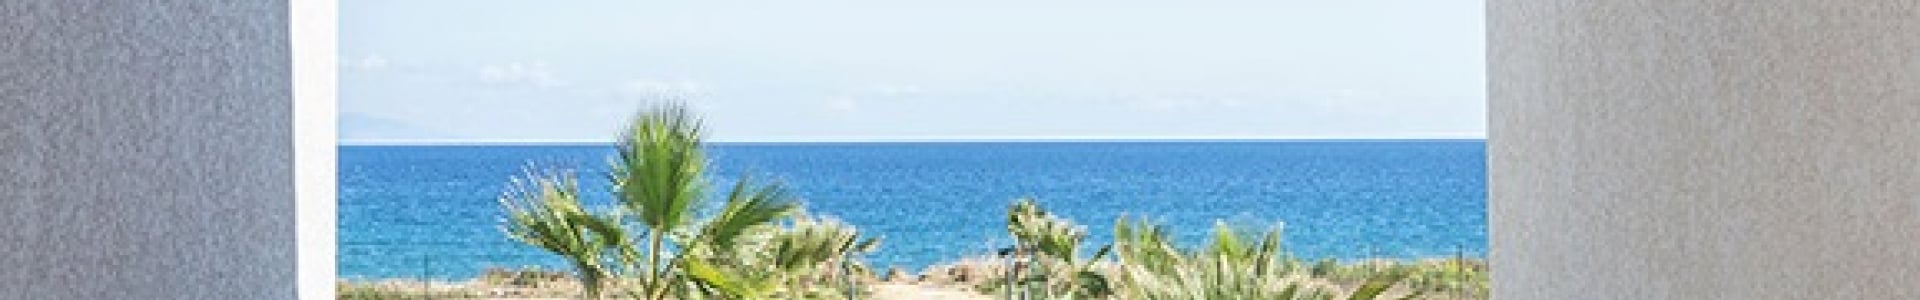 Voyage Privé : 3 ventes flash 8j/7n en résidence en Corse, jusqu'à - 62%